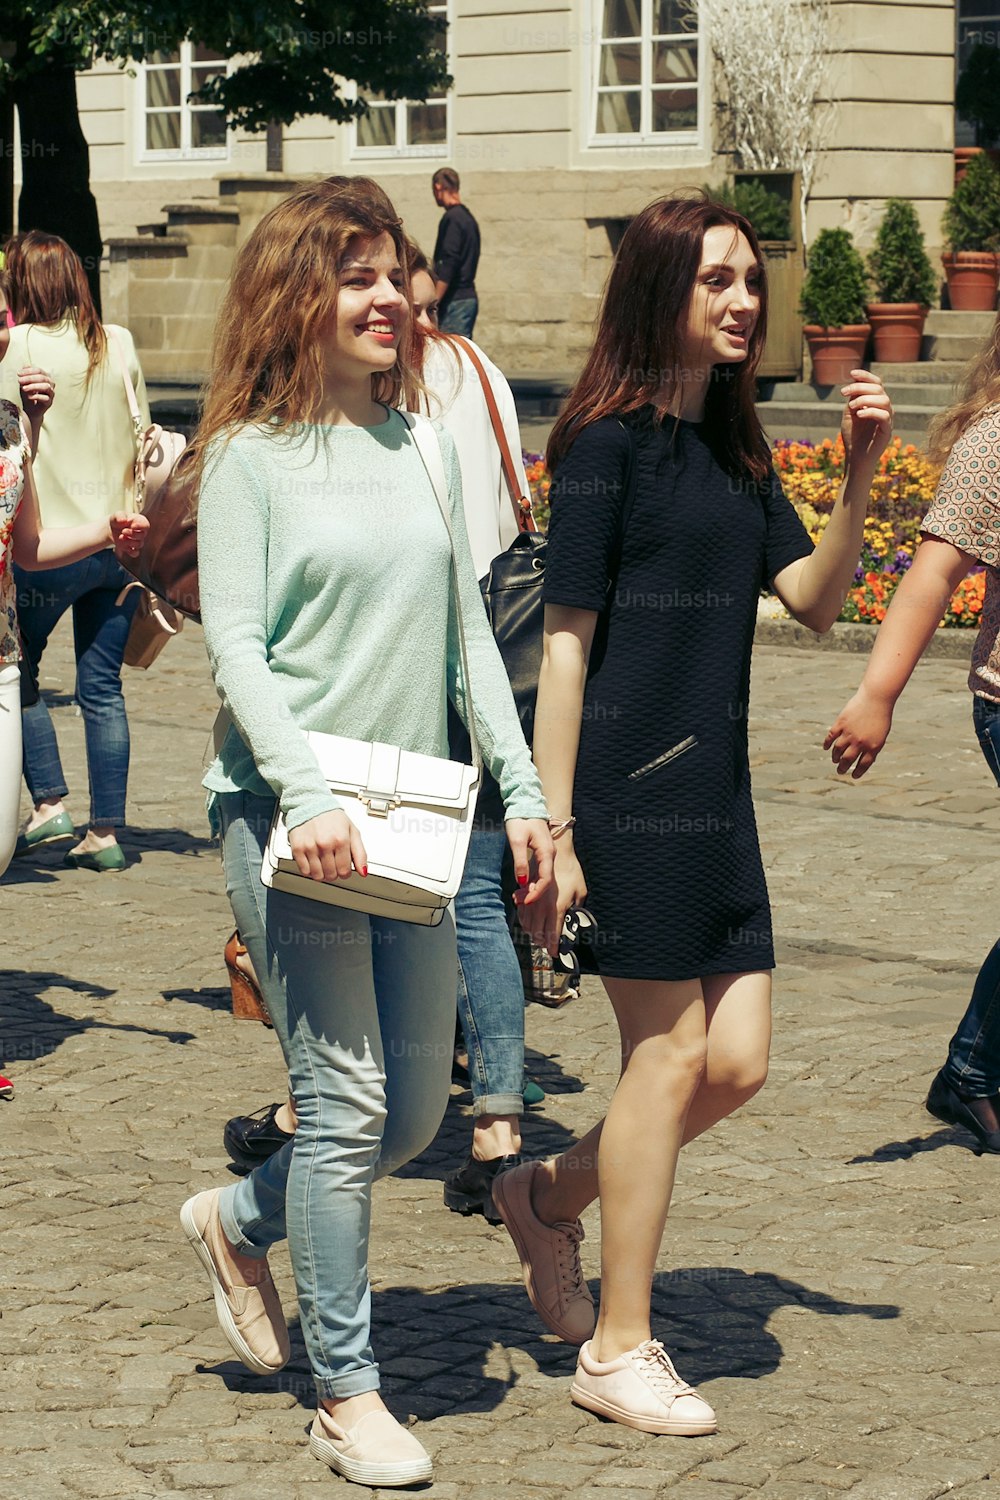 beaucoup de jeunes femmes heureuses marchant en parlant sur le fond de la vieille rue de la ville européenne, filles hipster élégantes s’amusant, moments de bonheur, concept d’amitié